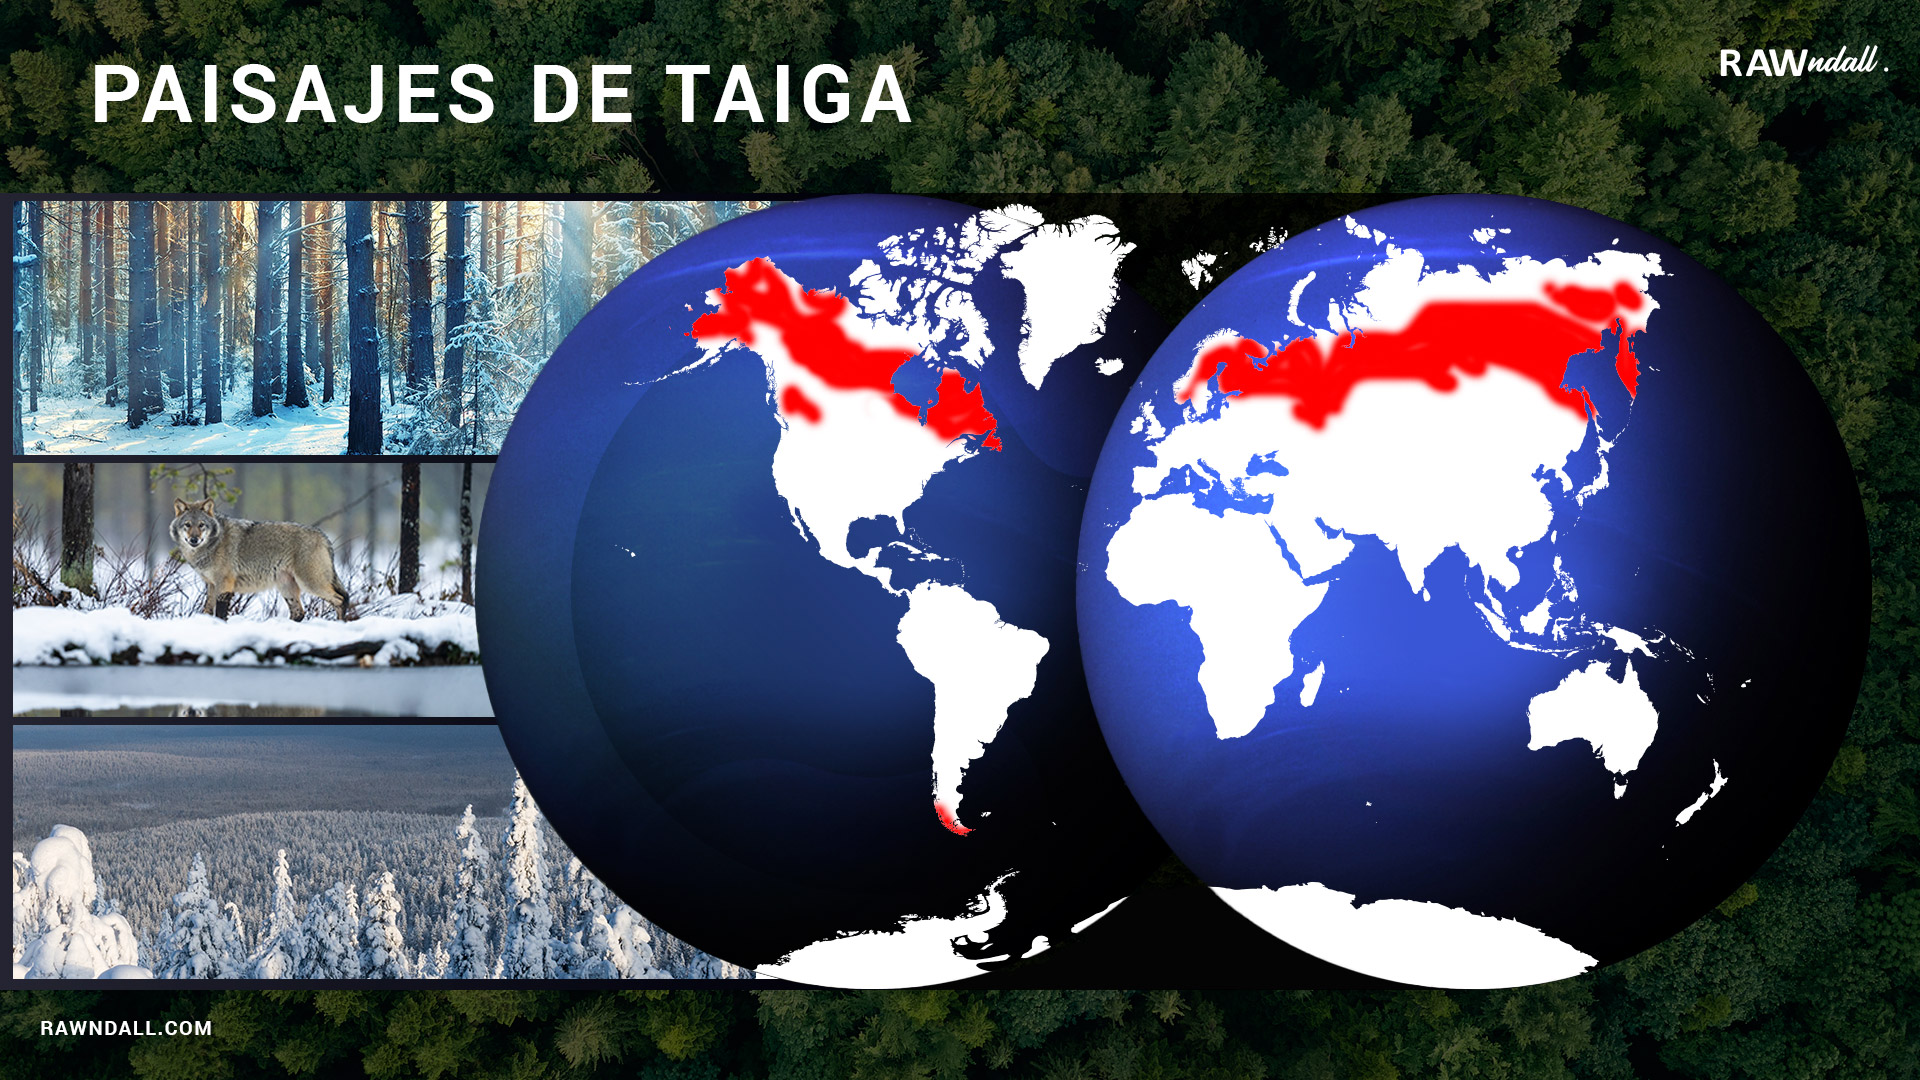 Mapa de paisajes de la taiga, en un planisferio representado de color rojo la región que abarcan los paisajes de taiga. a su lado tres fotografías. La primera del un bosque de coníferas, en la segunda un lobo entre la nieve y la tercera de un bosque de pinos cubiertos por nieve